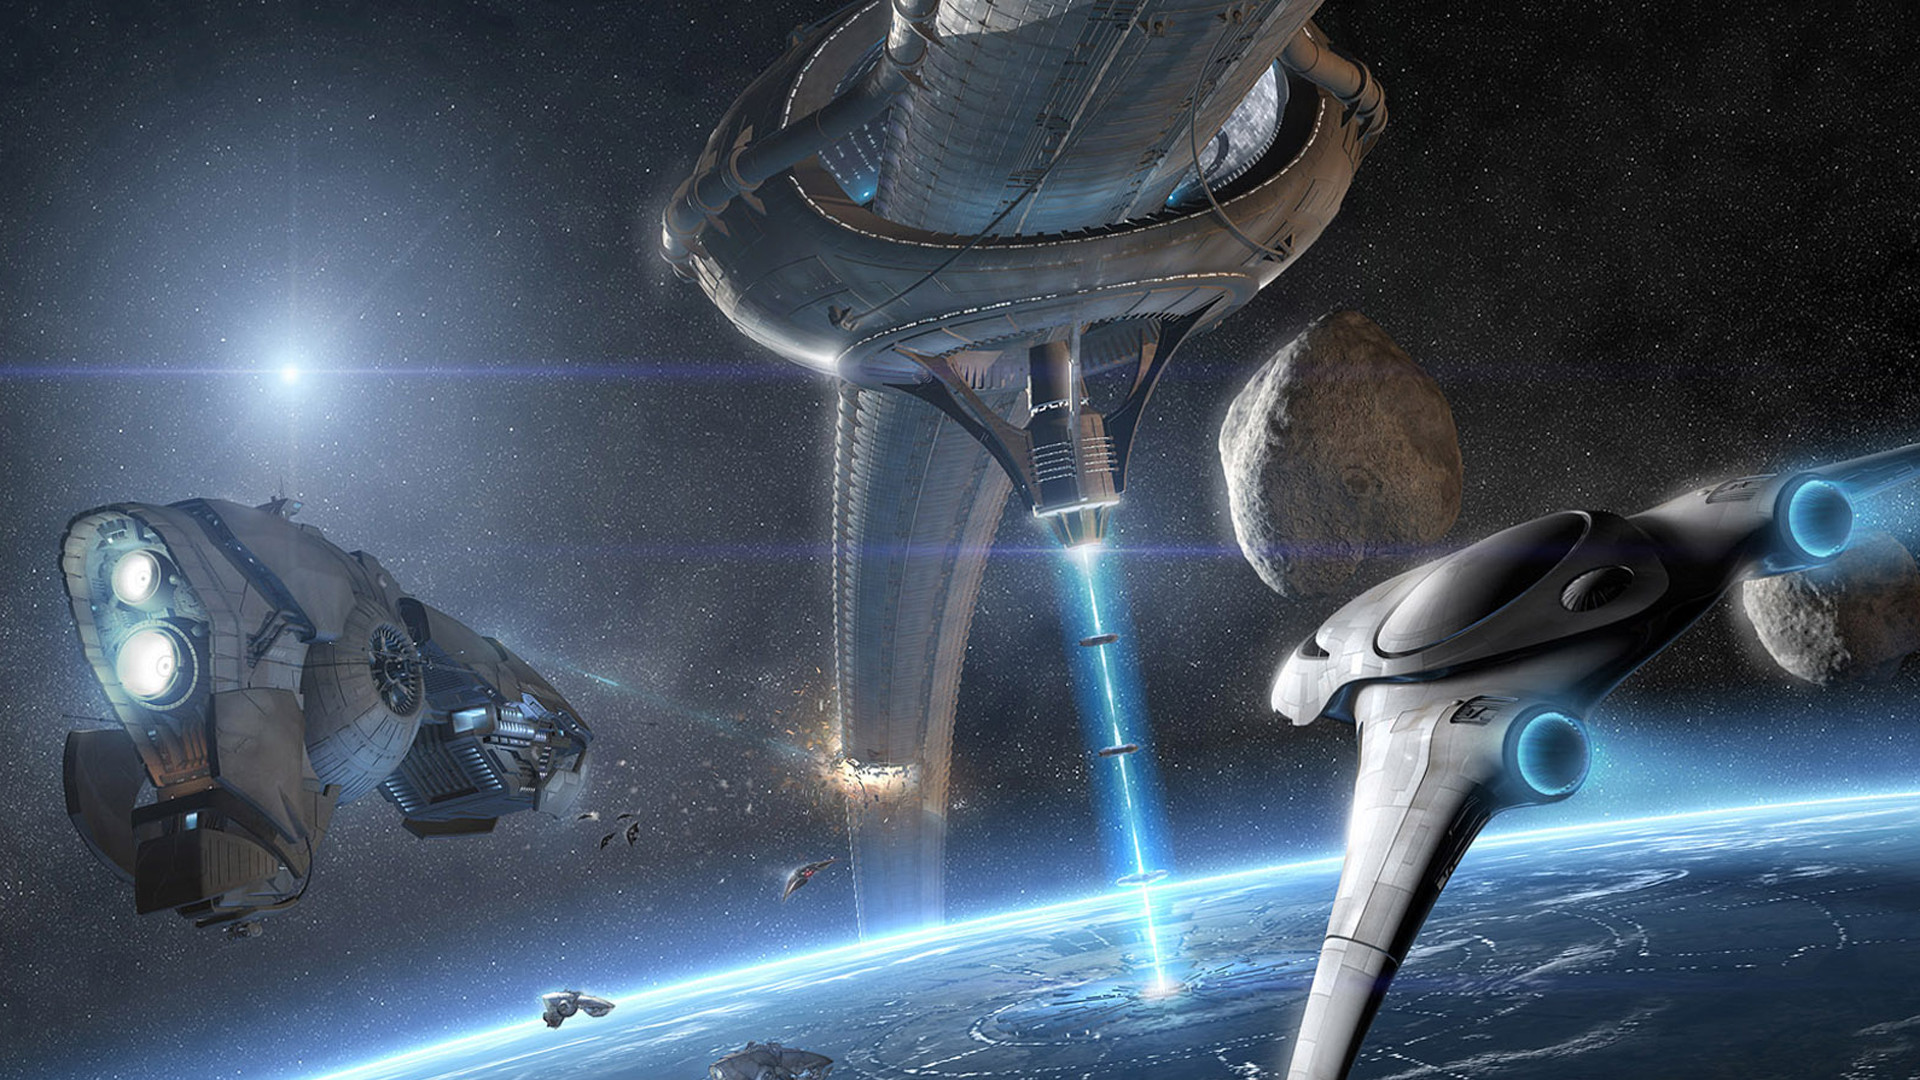 Futuristic Planets Sci fi Artwork Space Scenes Weaponry